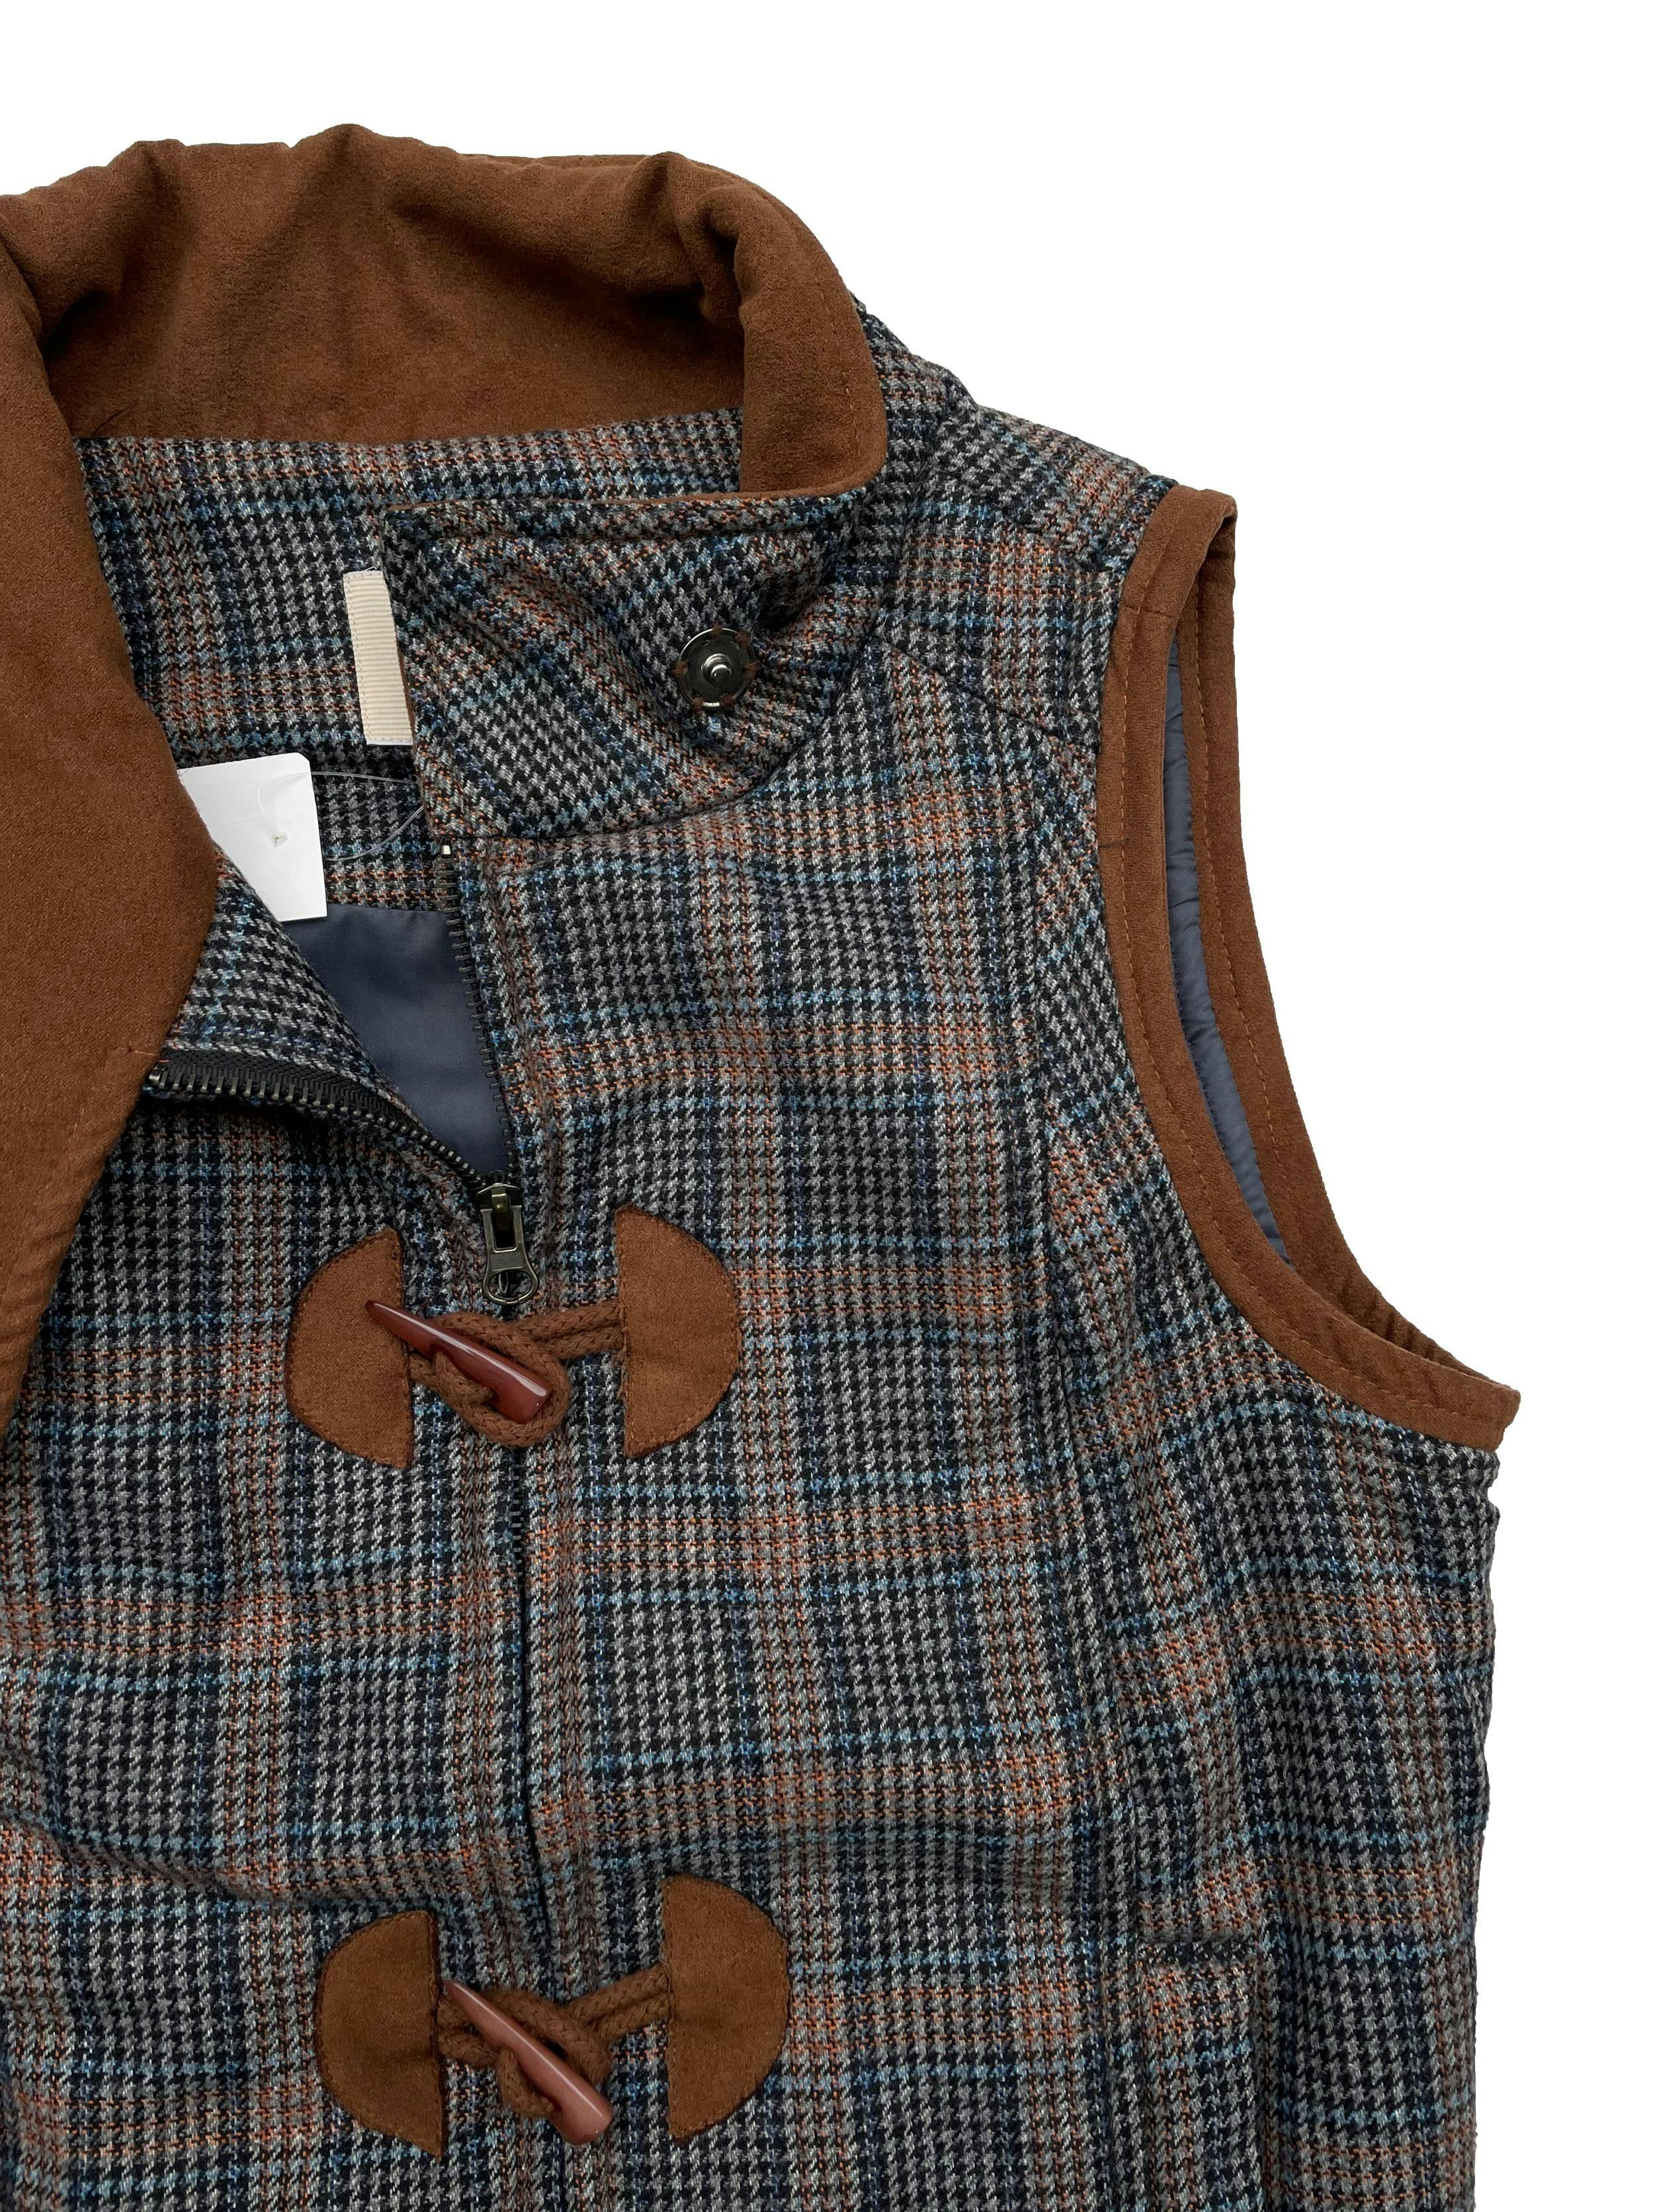 Chaleco Savanah marrón y azul, tela tipo lanilla , ligeramente acolchada. Con bolsillos, botones tipo cacho y cierre. Largo 55cm.